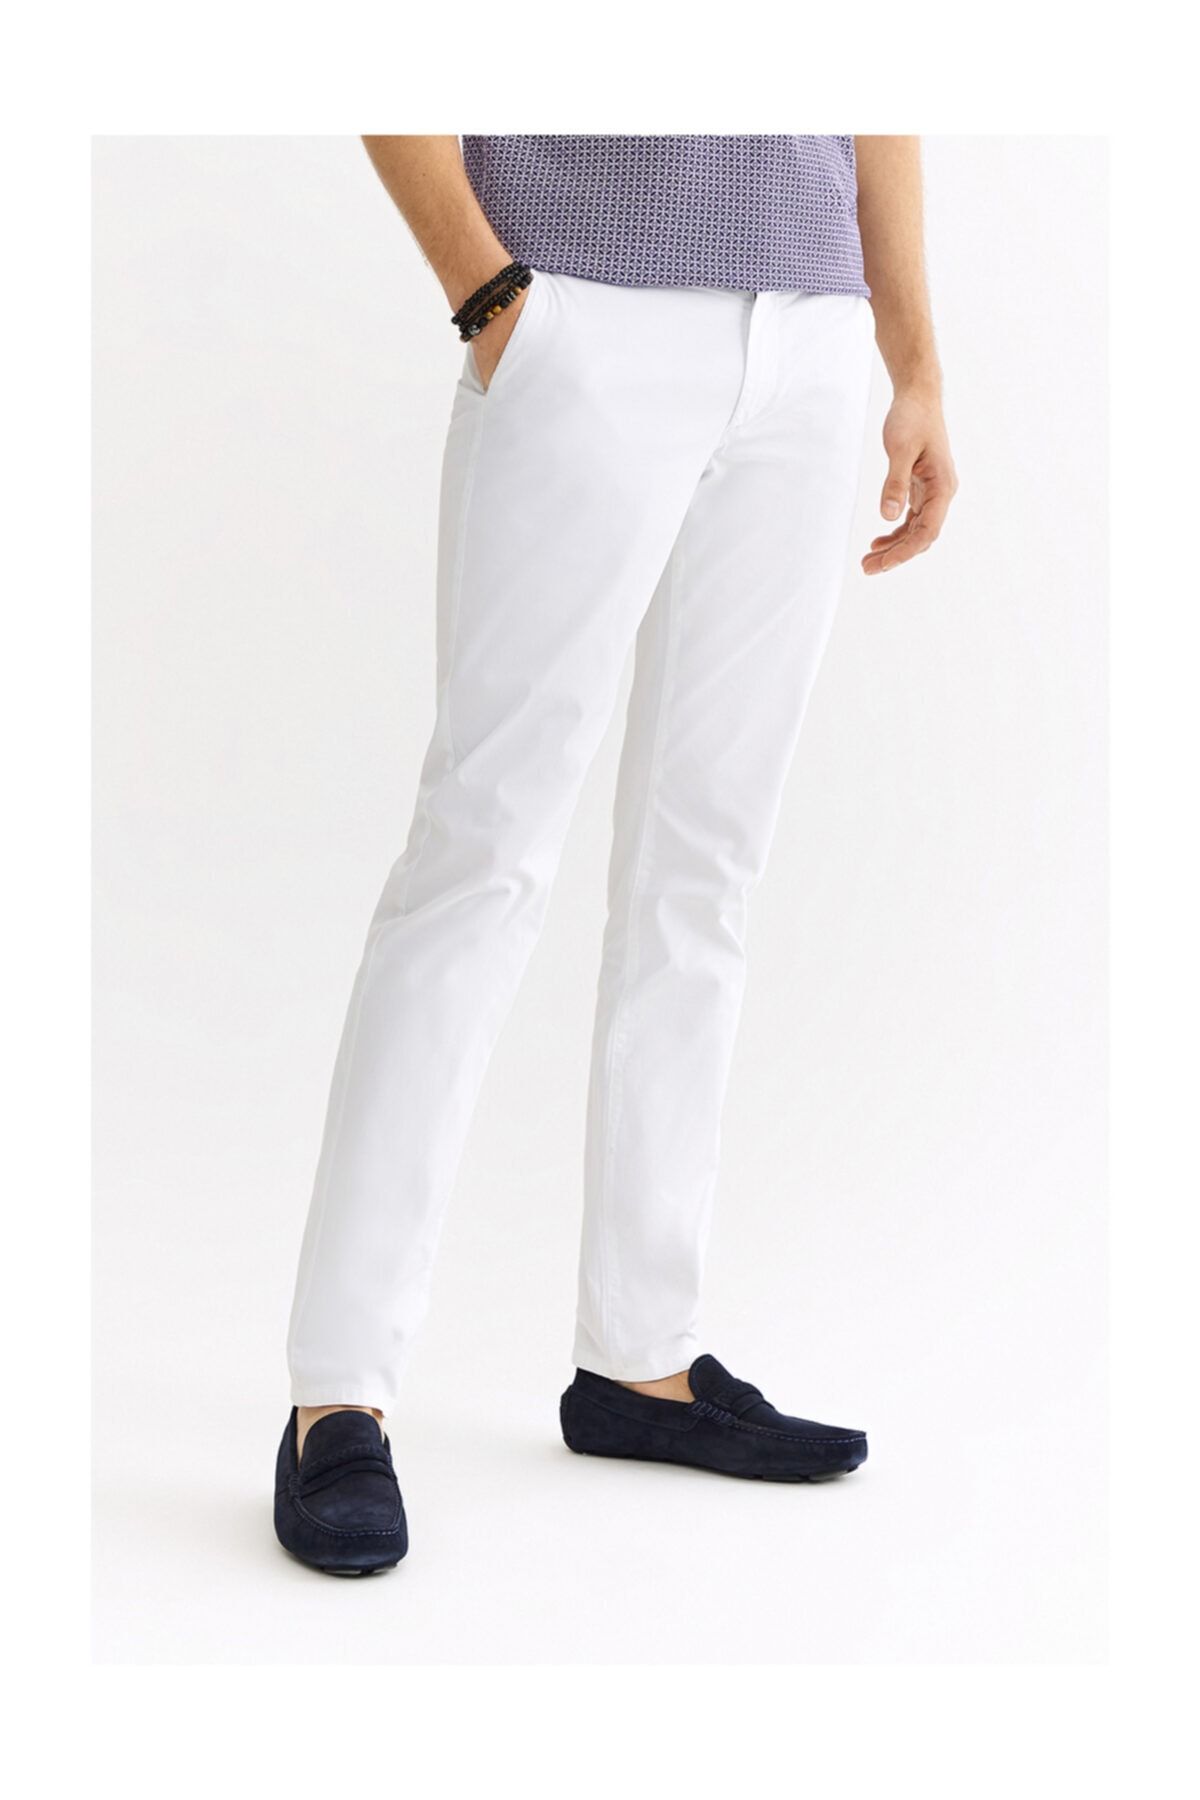 Avva Erkek Beyaz Yandan Cepli Armürlü Slim Fit Pantolon A01s3071